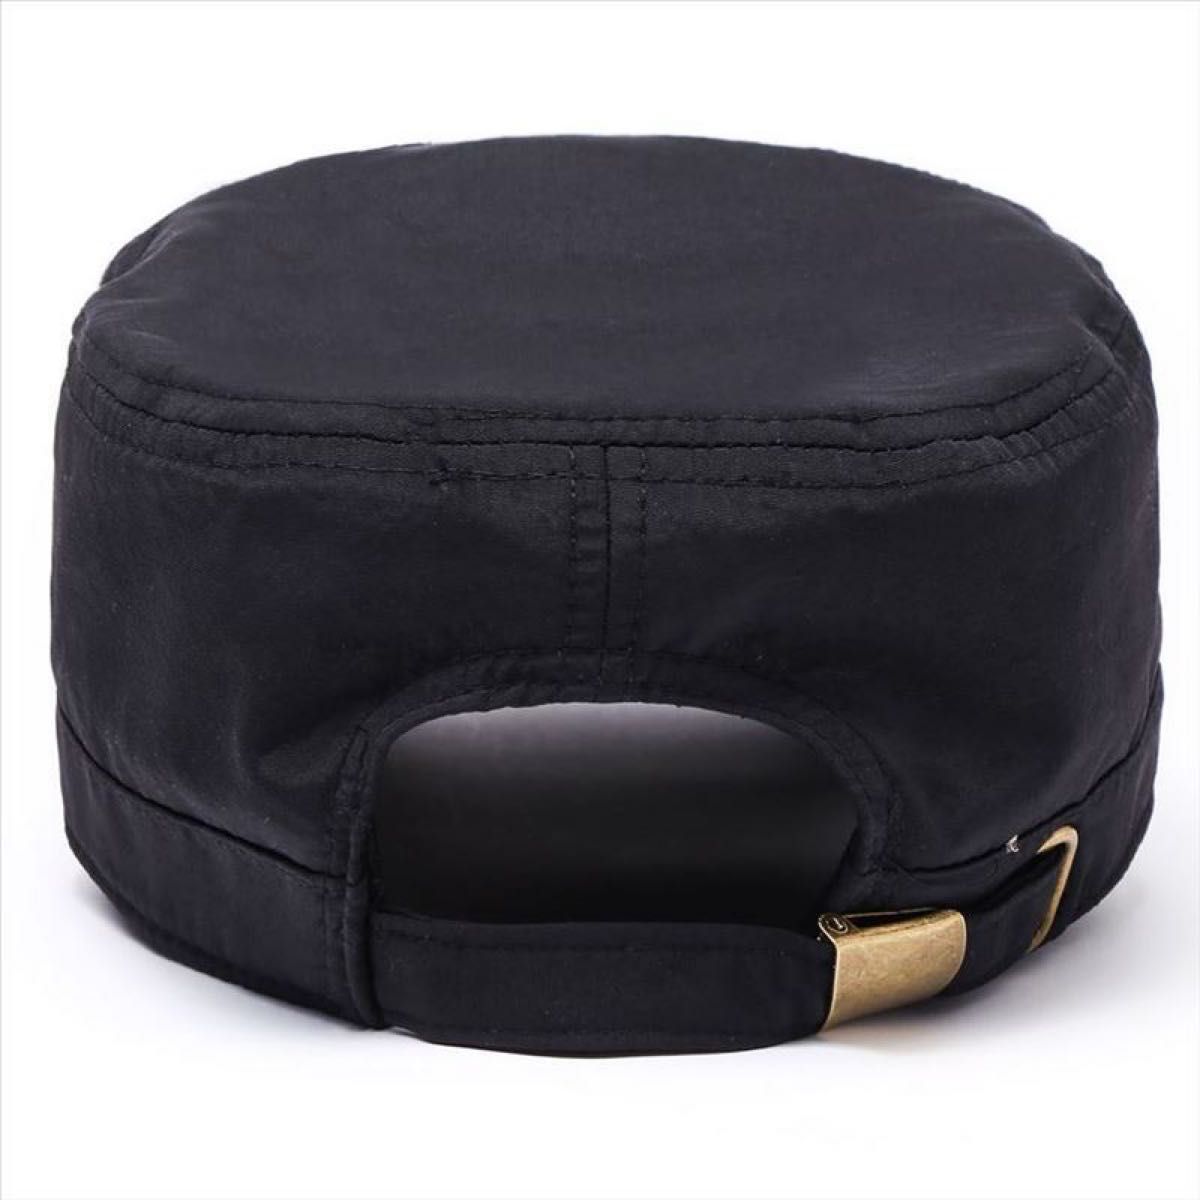 ワークキャップ ブラック 黒 ユニセックス サイズ調節可 UV対策 帽子 キャップ アウトドア オールシーズン 人気 男女兼用